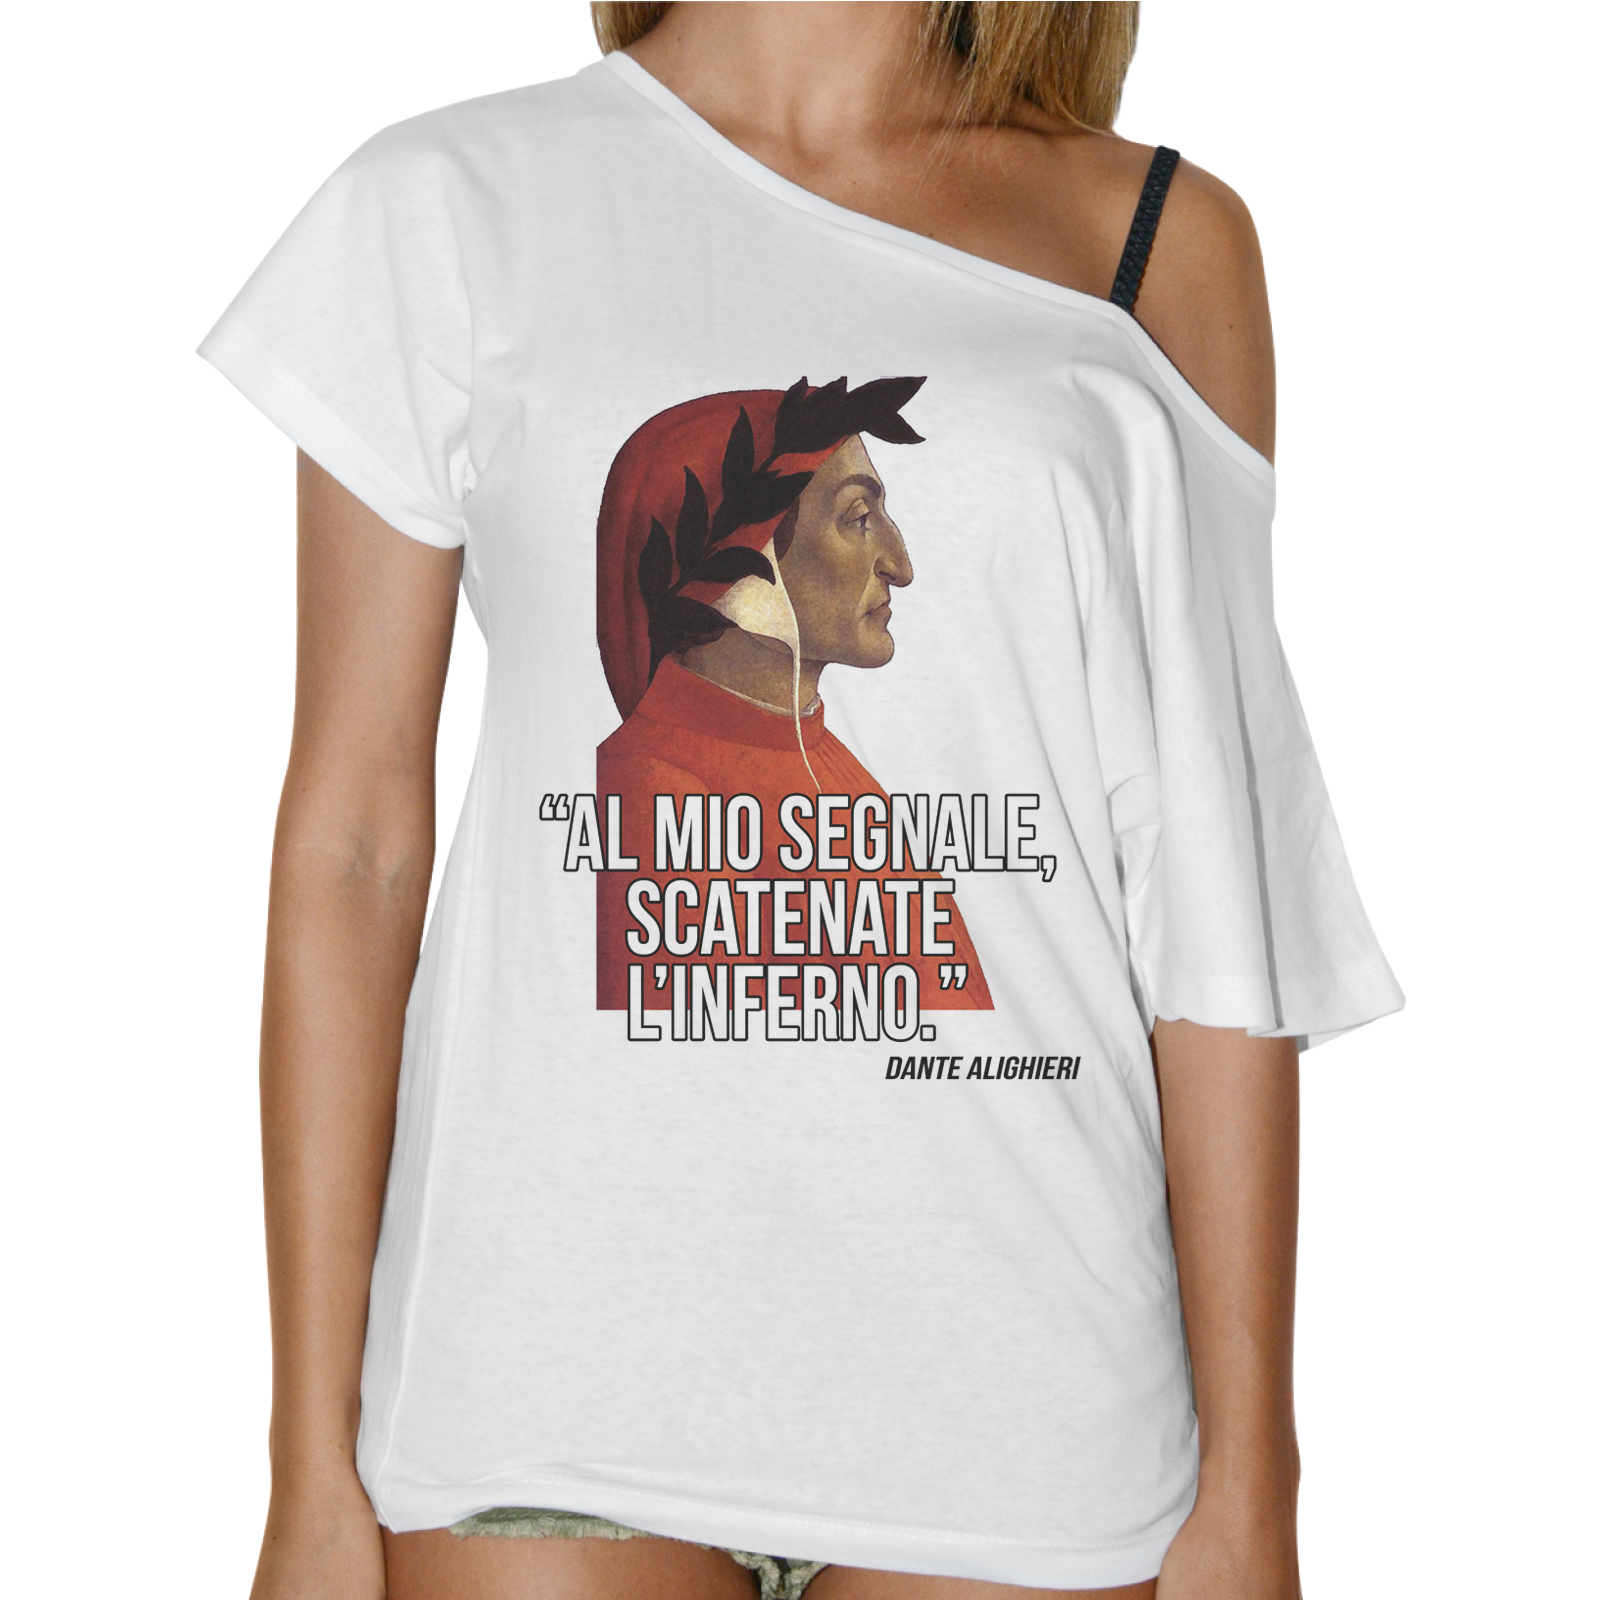 T-Shirt Donna Collo Barca SCATENATE L’INFERNO 1